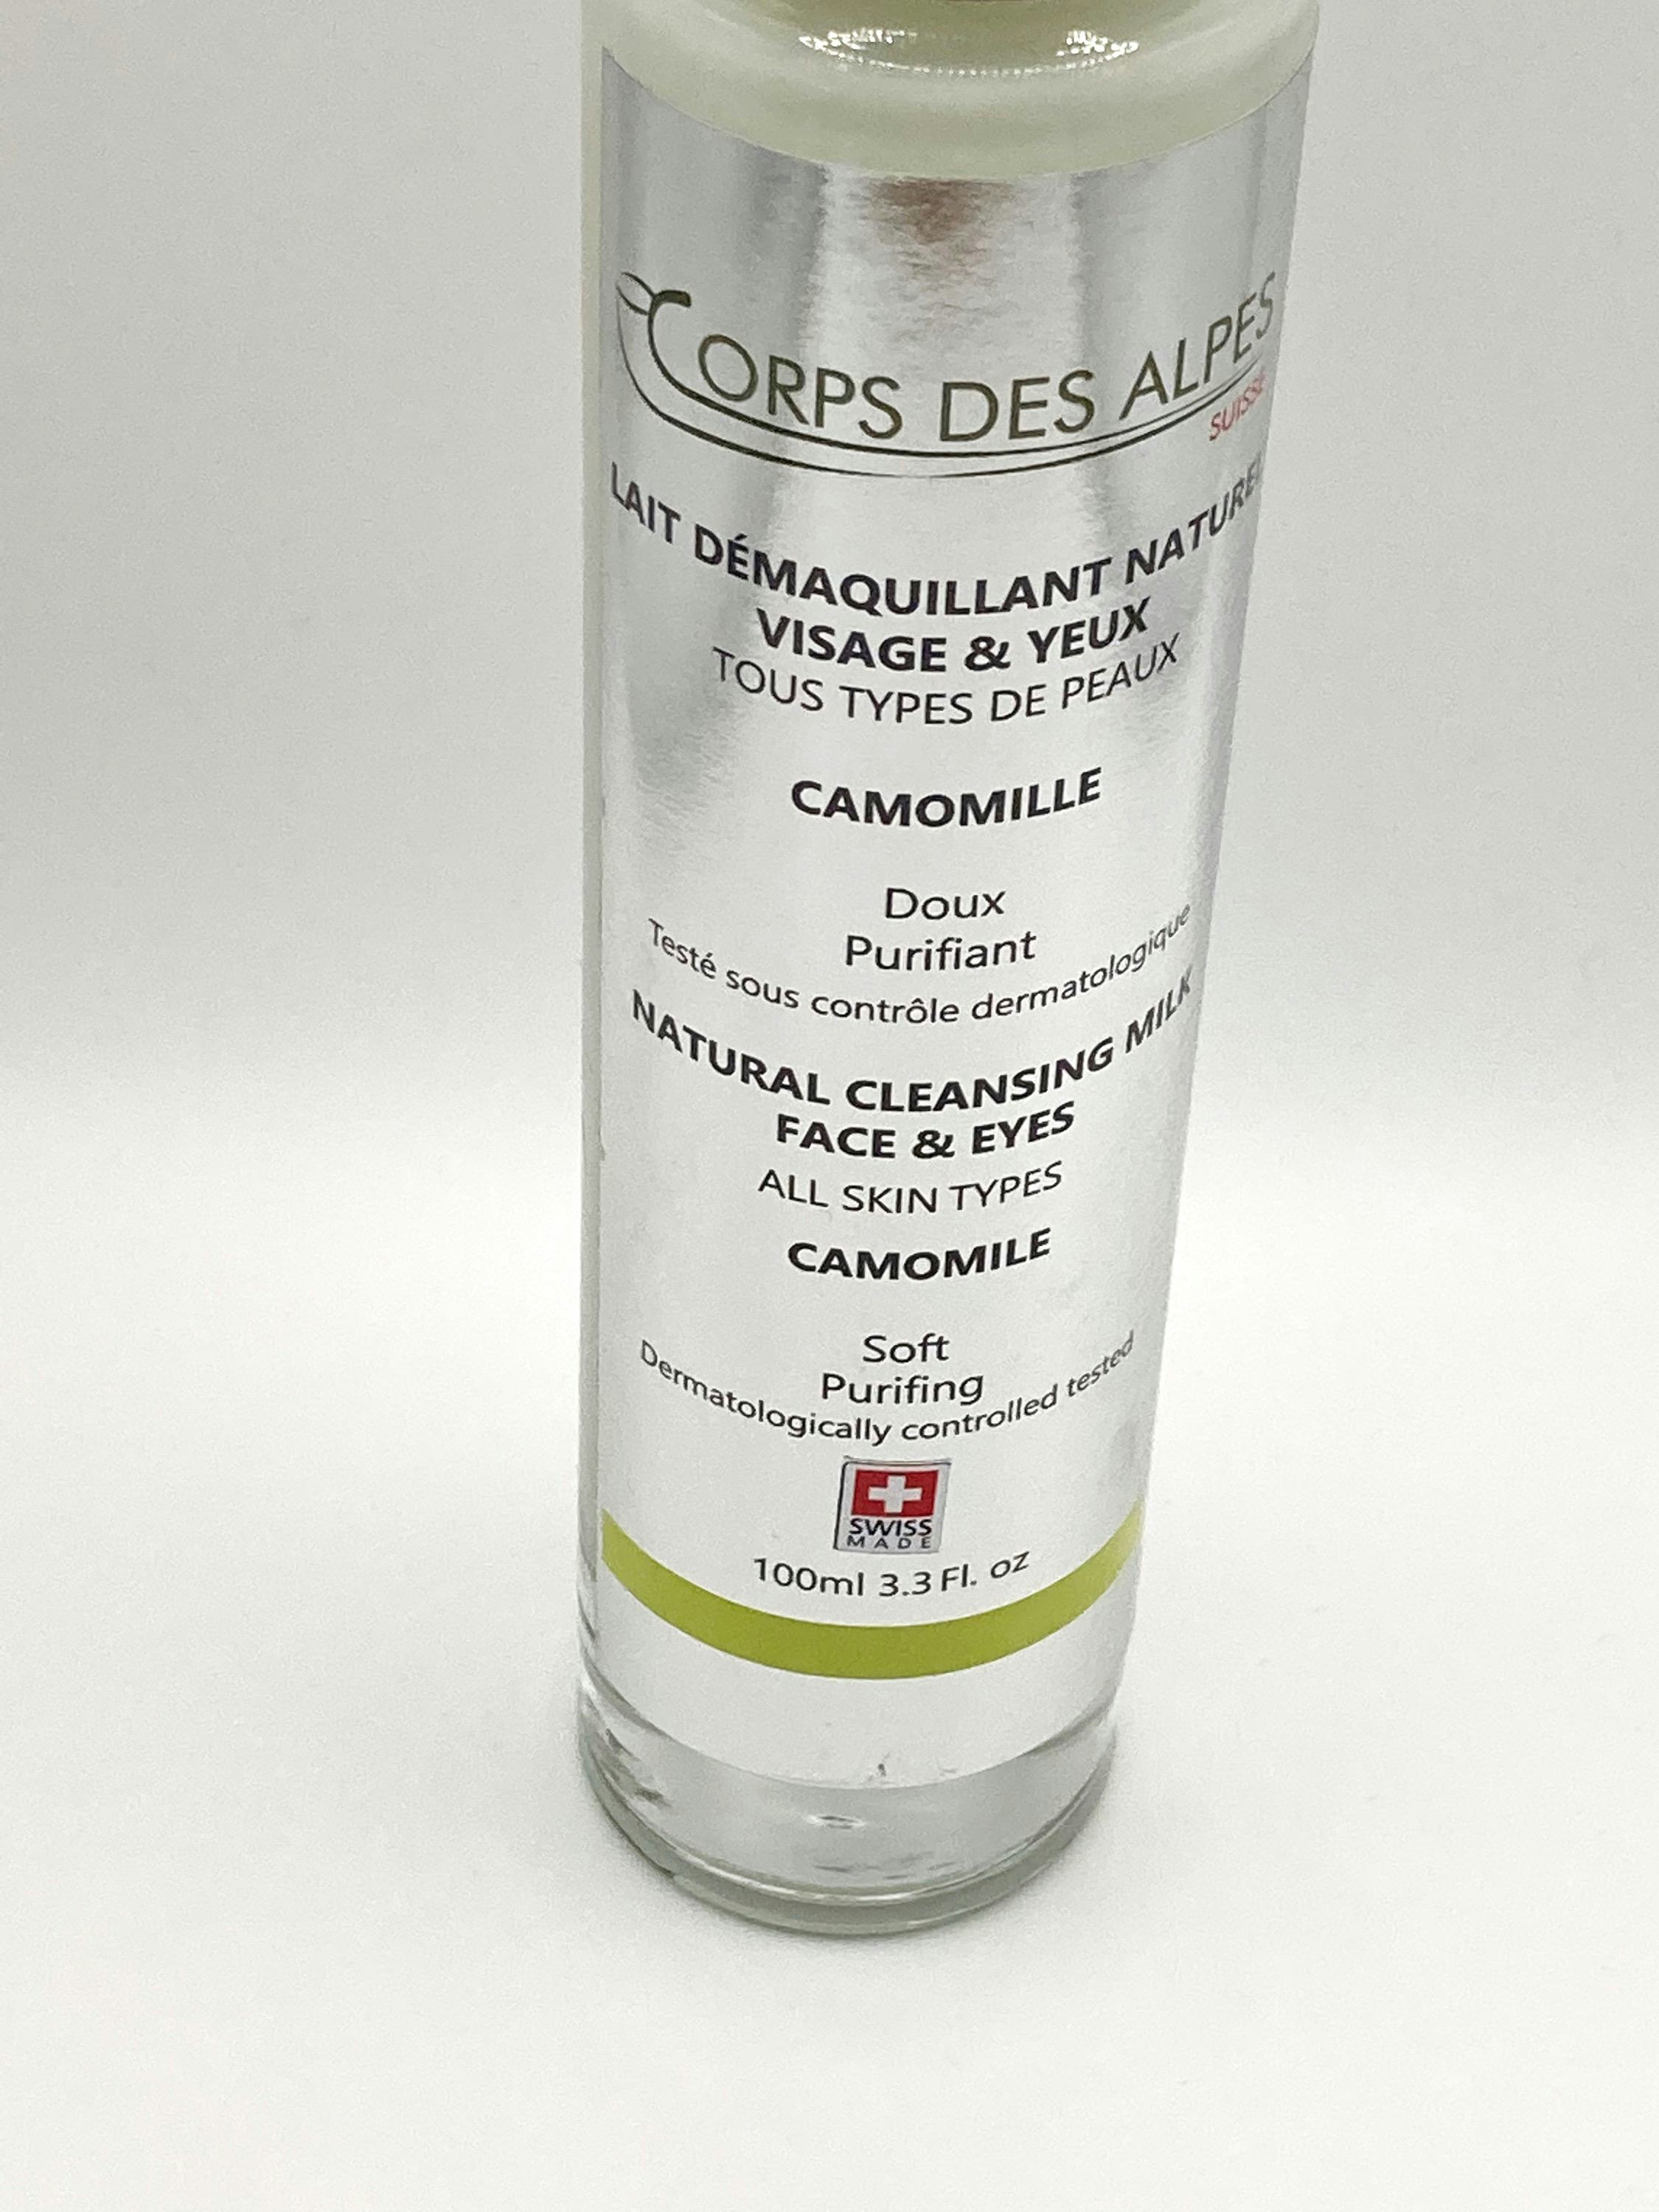 Lait Démaquillant Naturel Camomille, handwerkliches Produkt für den Direktverkauf in der Schweiz